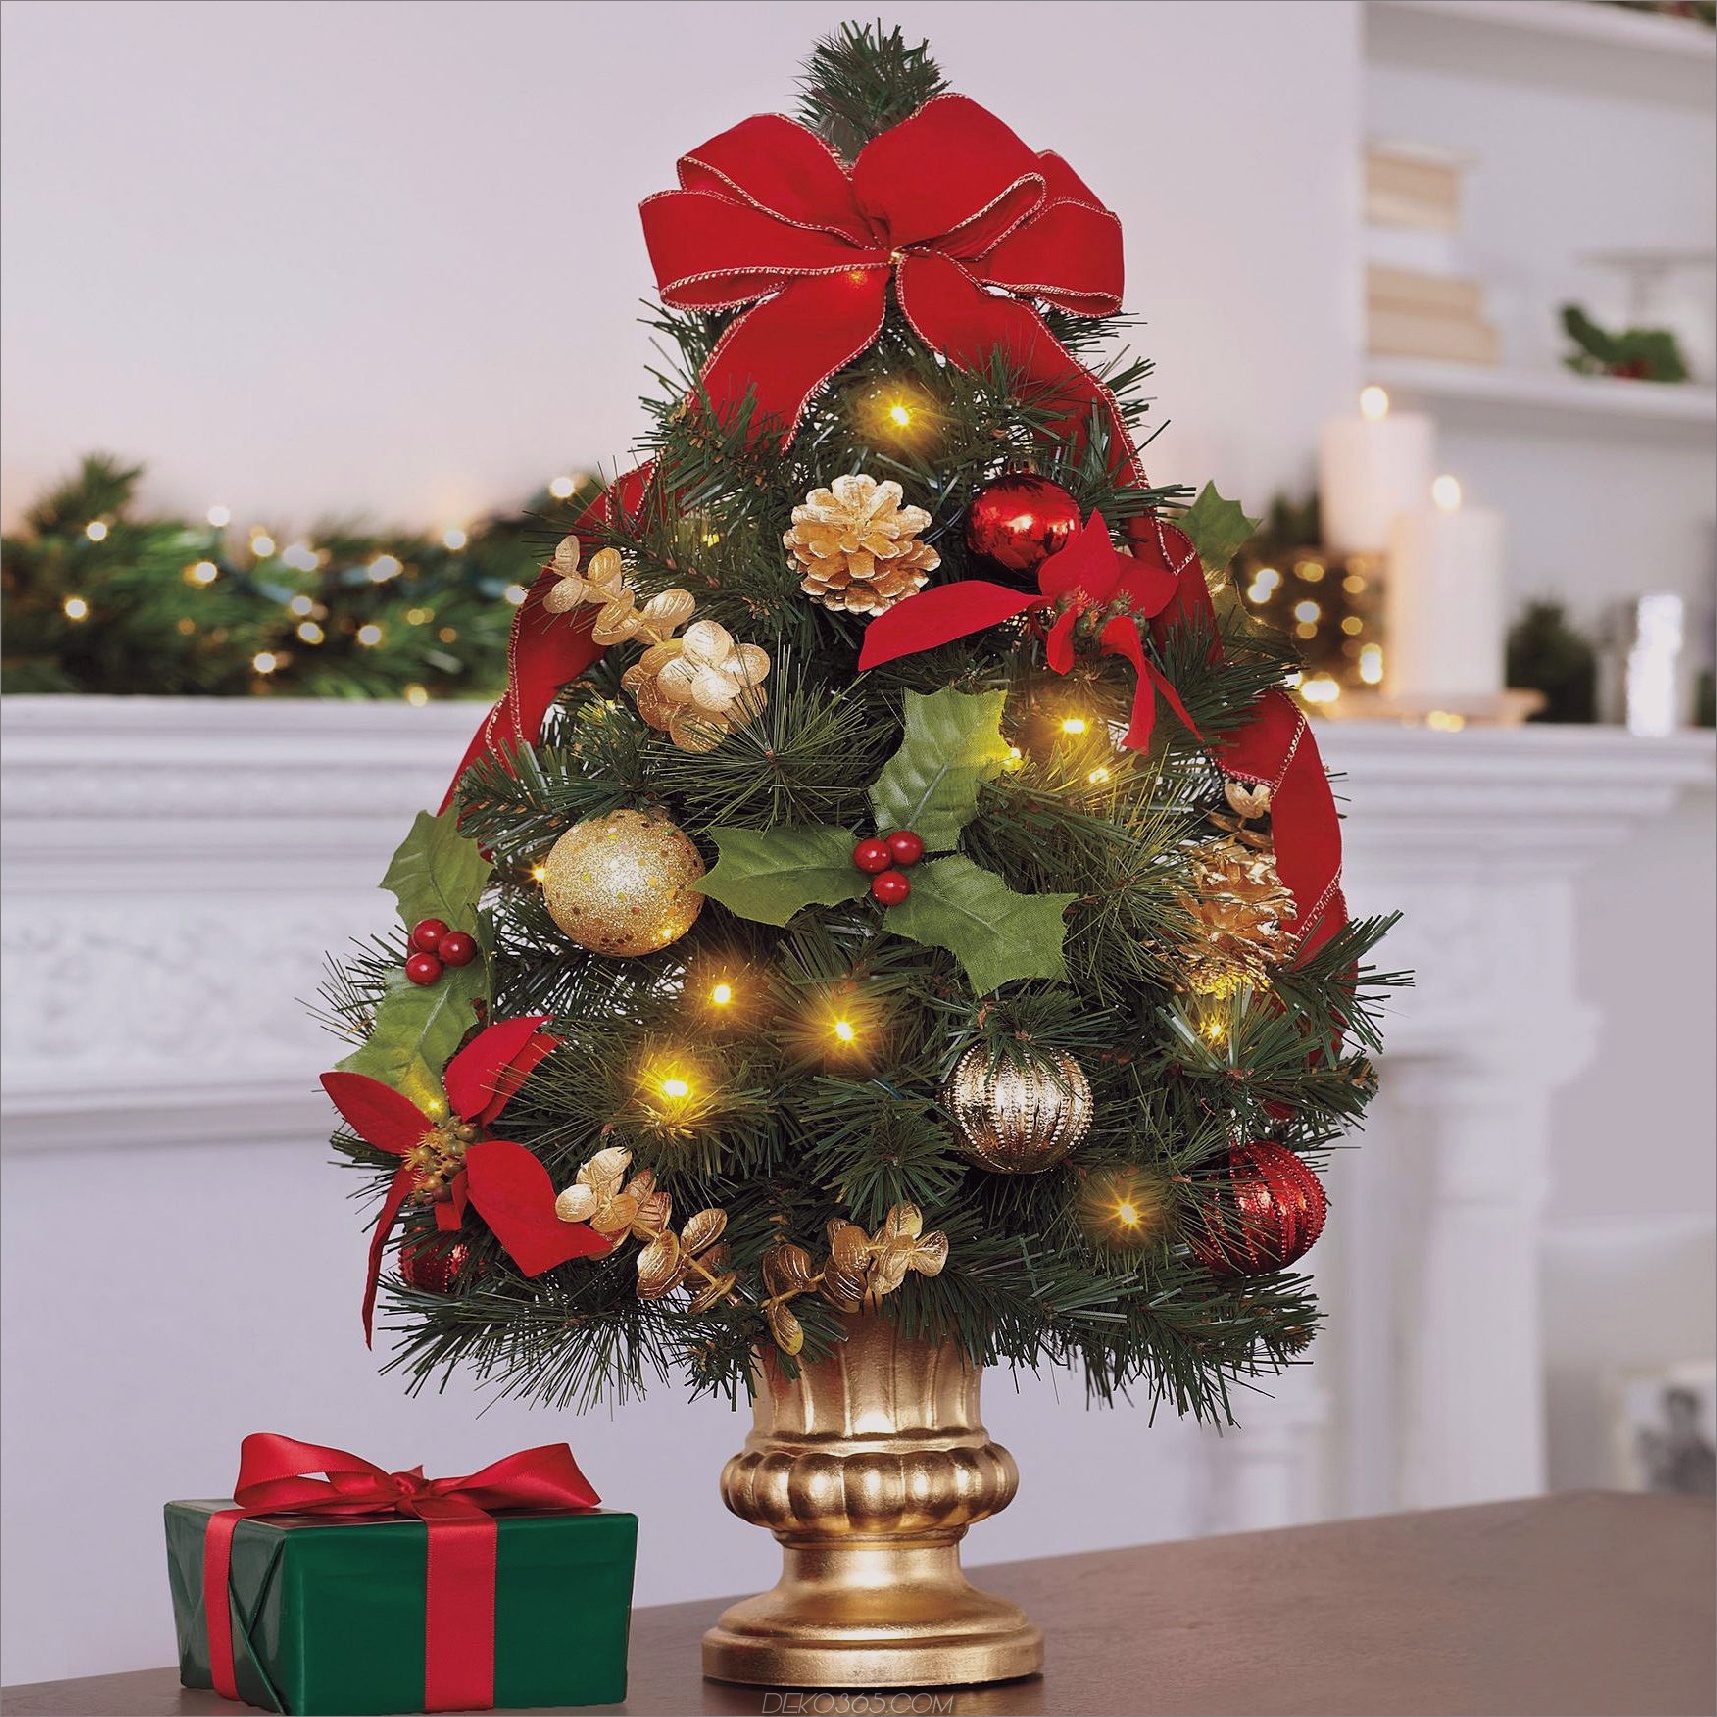 Mini Weihnachtsbaum Dekor, das eine ganze Menge Sinn macht_5c588ba86fd82.jpg